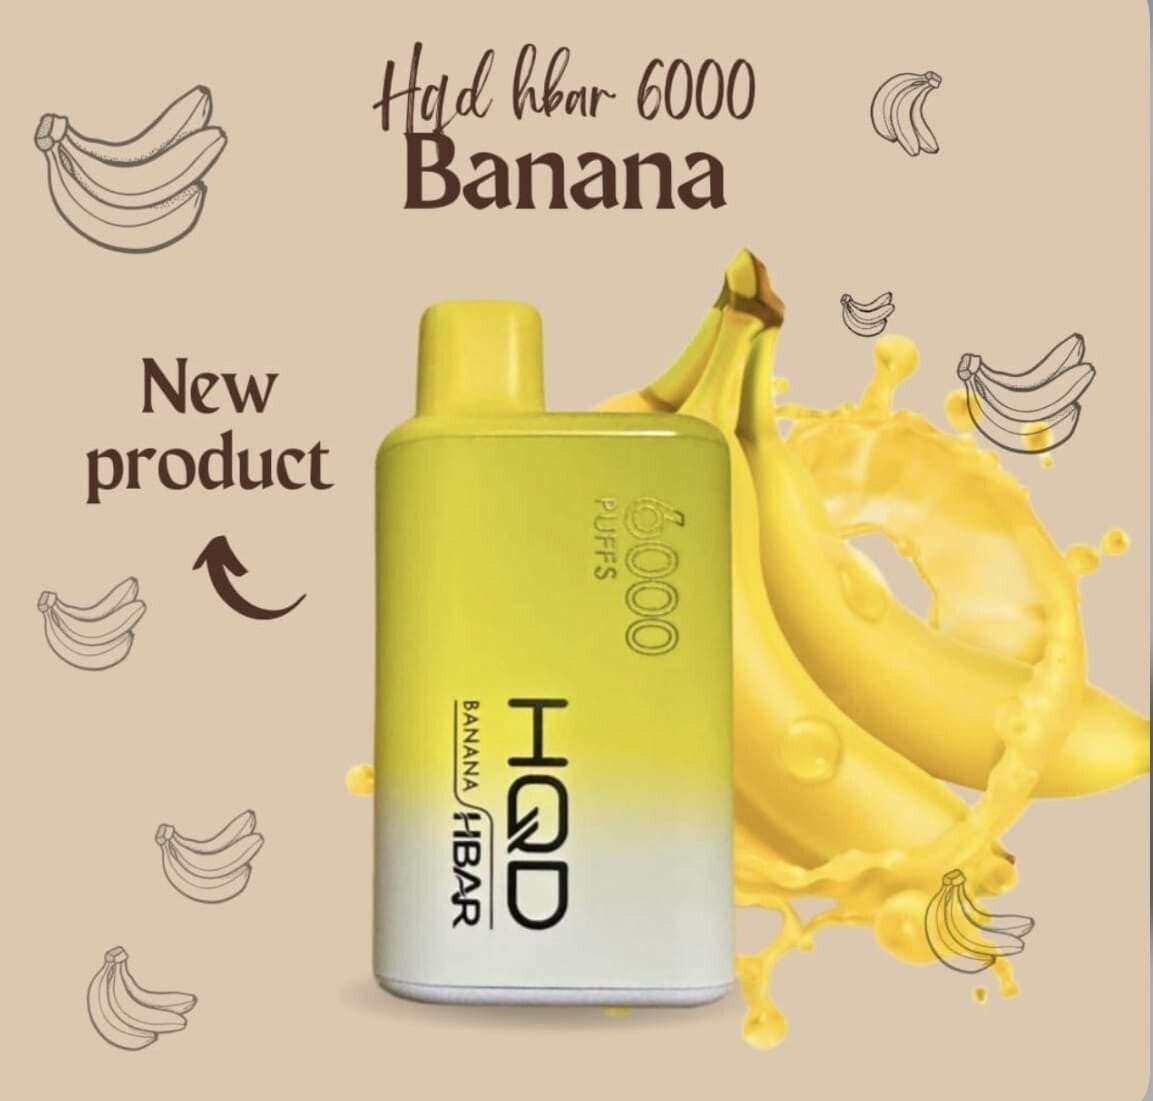 HQD Hbar Banana 6000